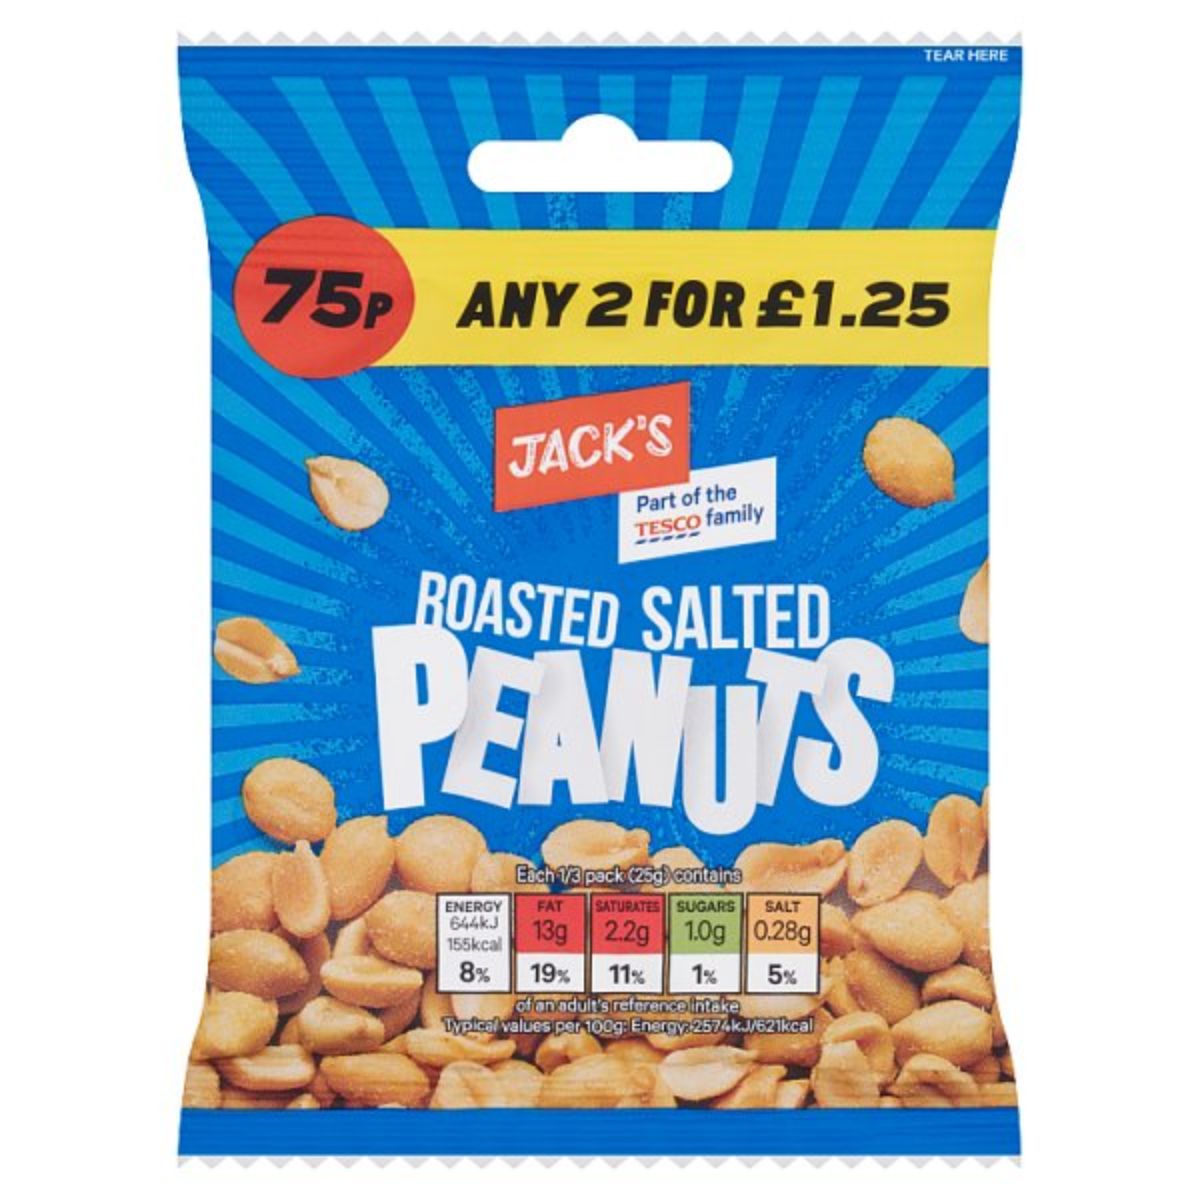 Jacks - Roasted Salted Peanuts - 75g.